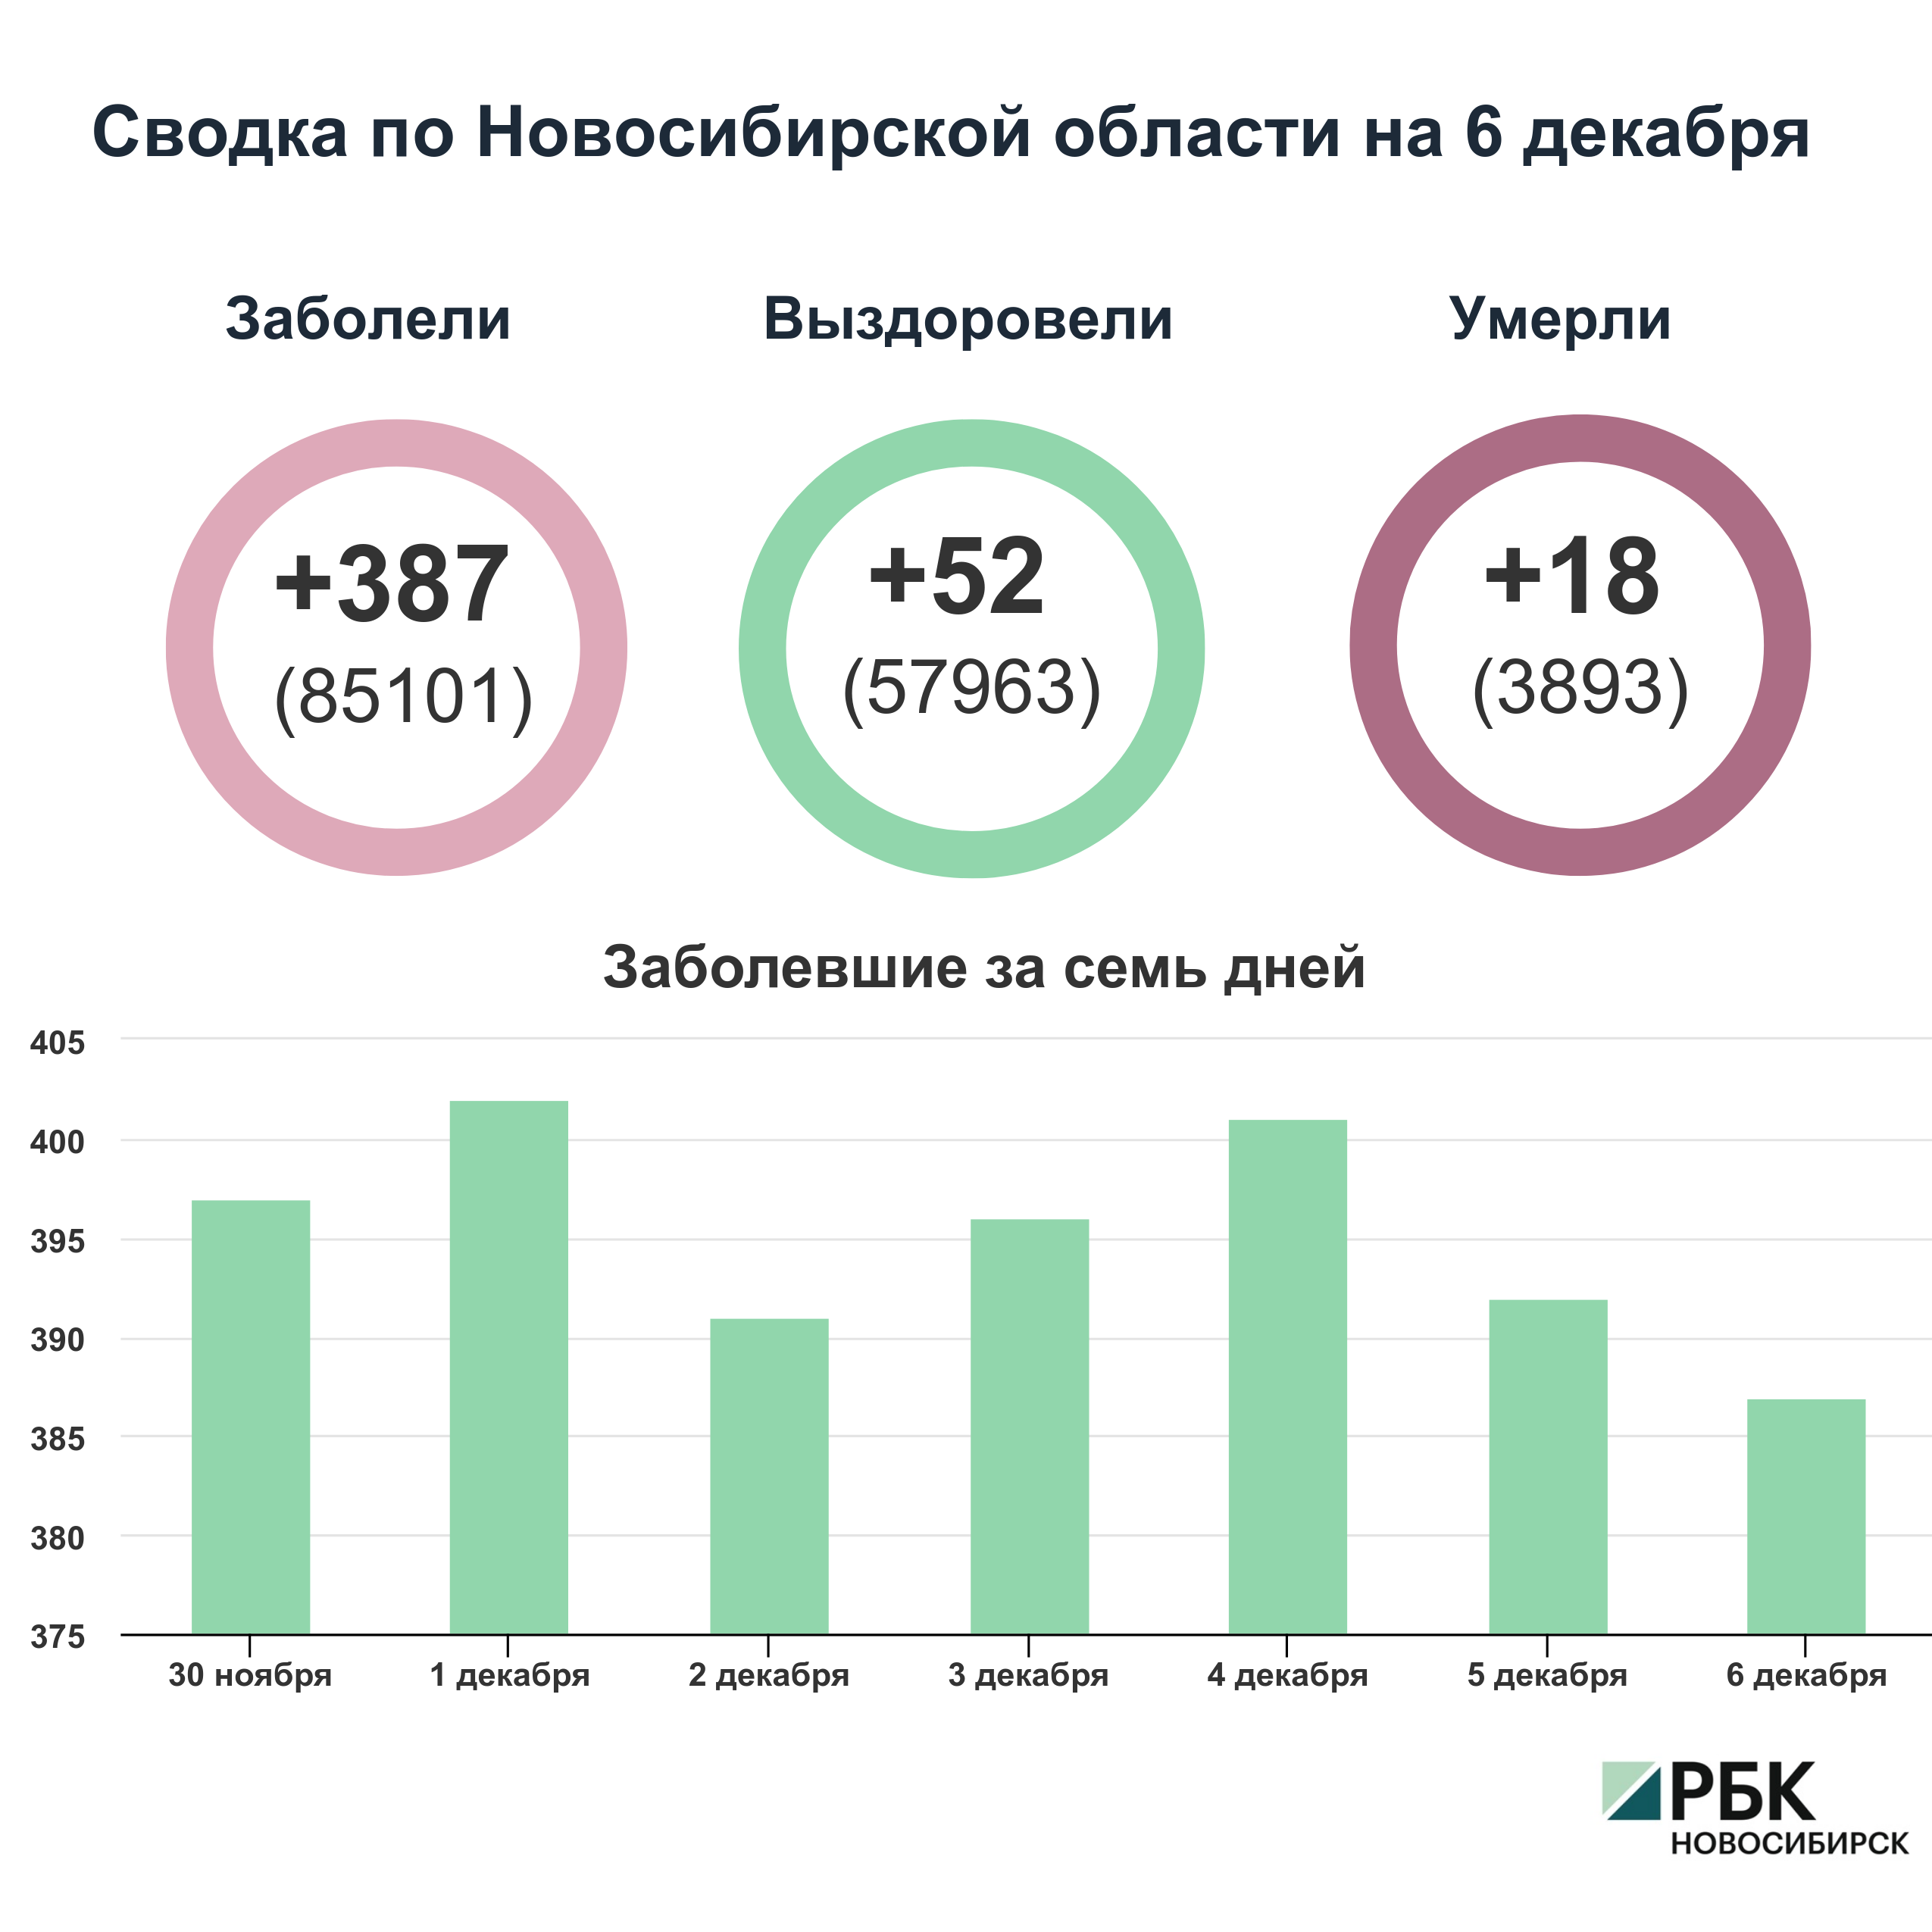 Коронавирус в Новосибирске: сводка на 6 декабря